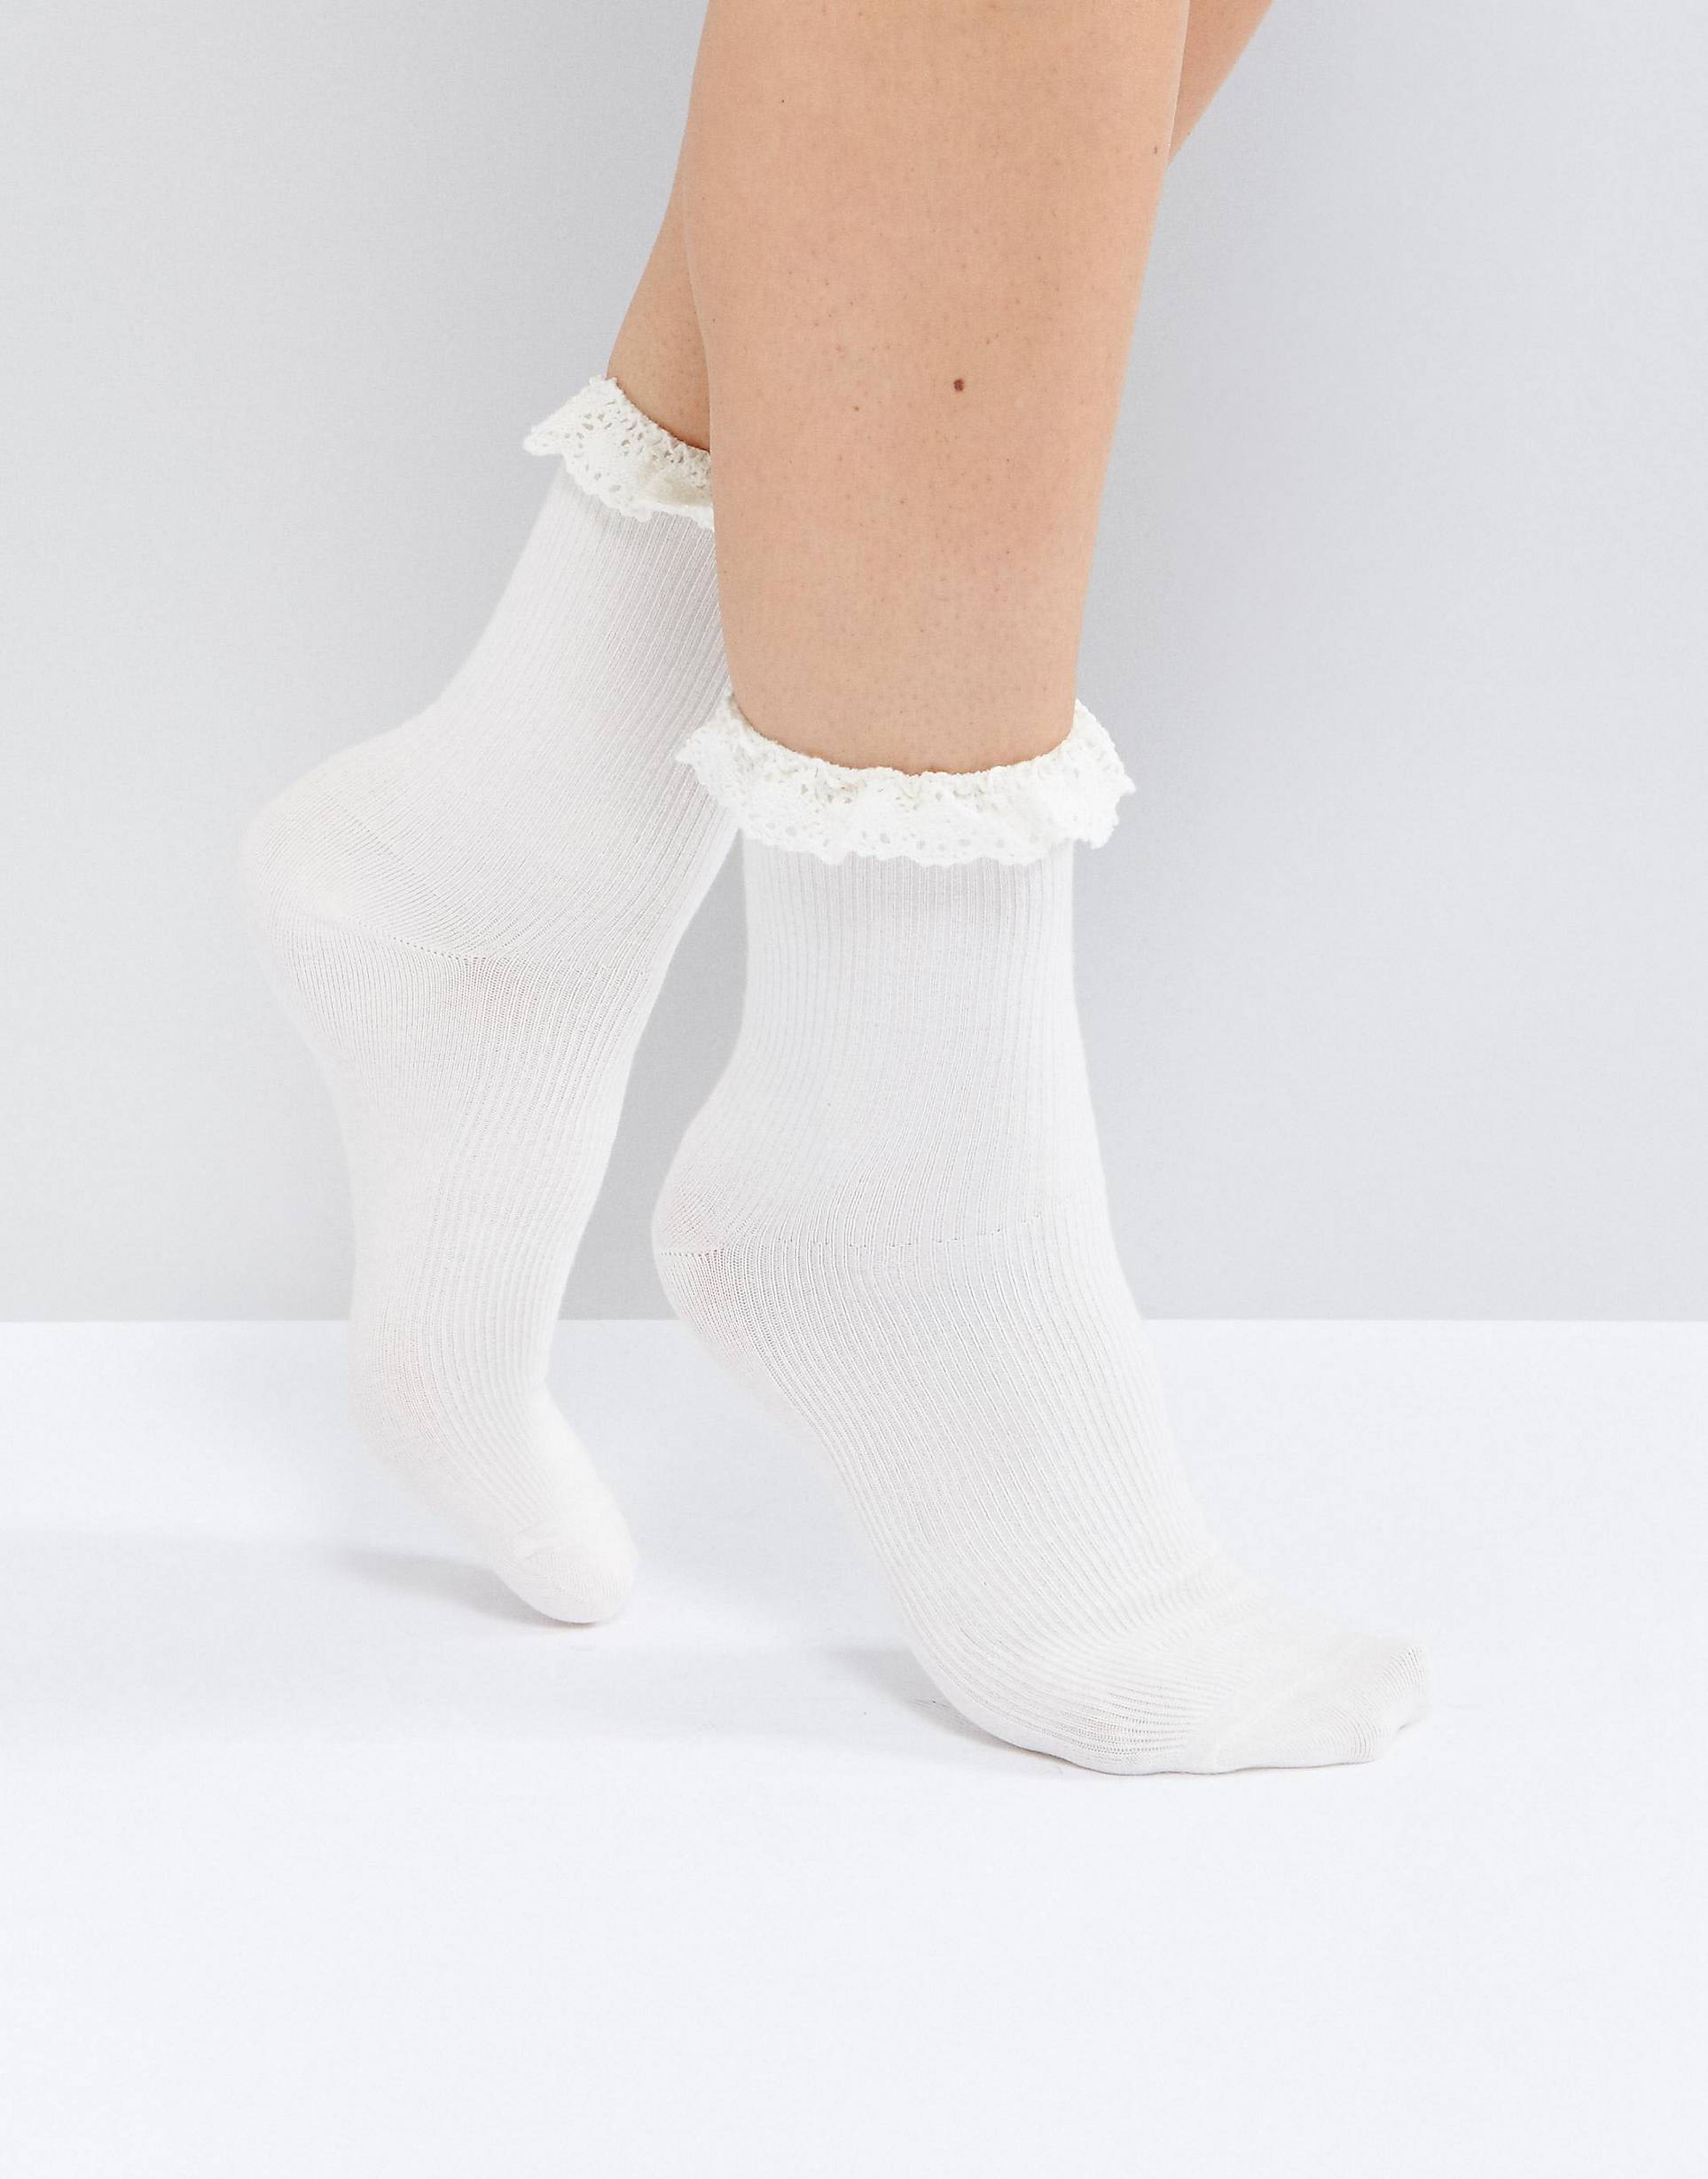 Белые носочки фетиш. Носки Monki. Носки 7/6 Ankle Socks White. Носки с оборками. Белые носки с оборкой.